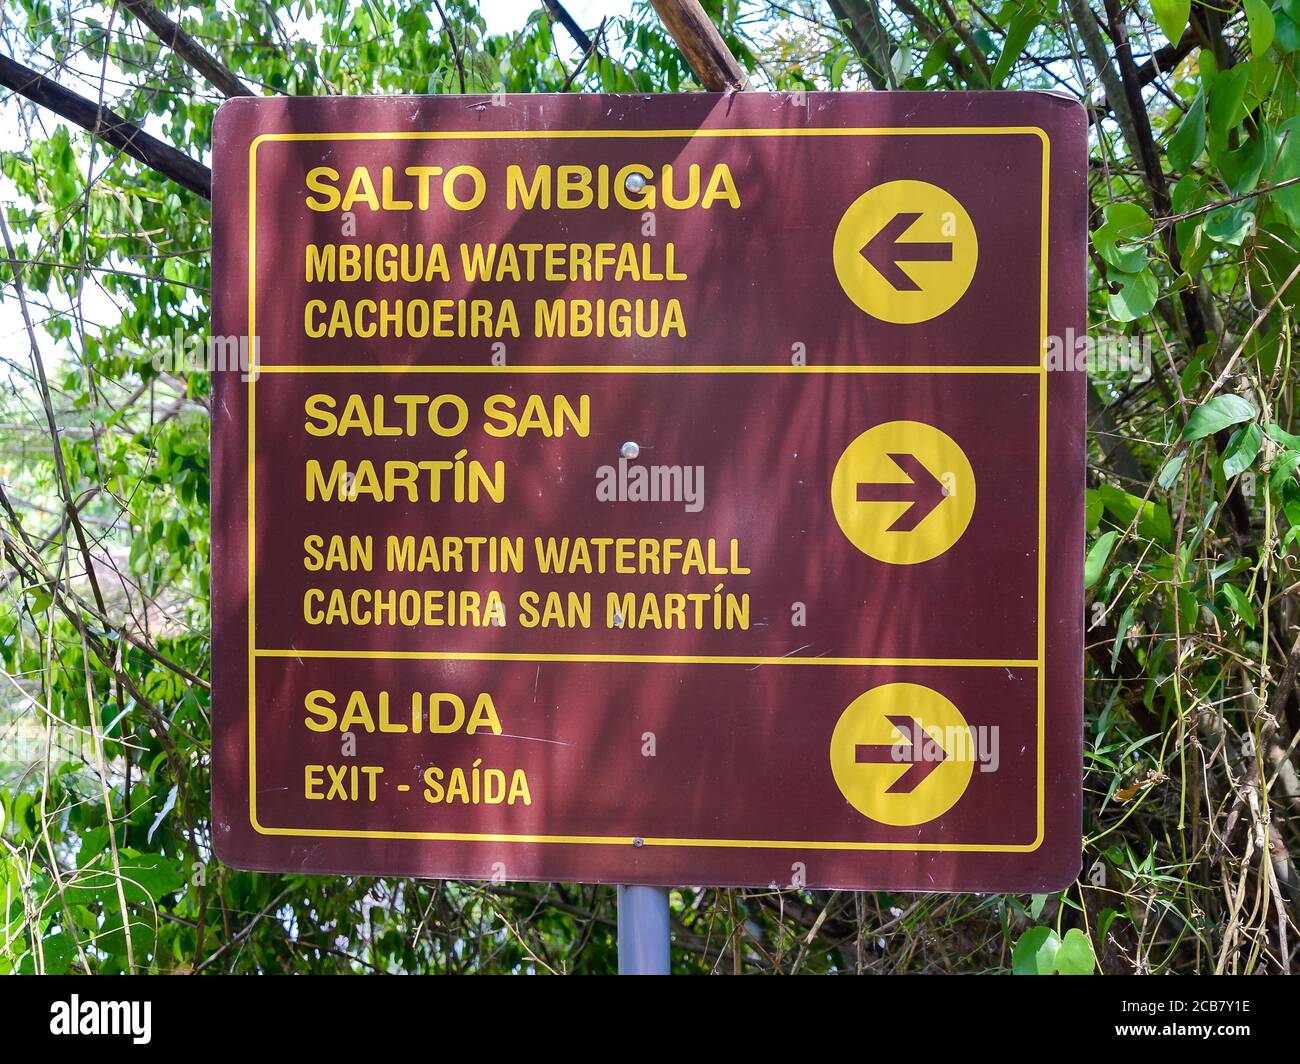 Panneau indiquant les directions dans le parc national d'Iguazú sur le côté de l'Argentine. Embarquez avec des indications pour les touristes visitant les chutes d'Iguassu / chutes d'Iguazu. Banque D'Images